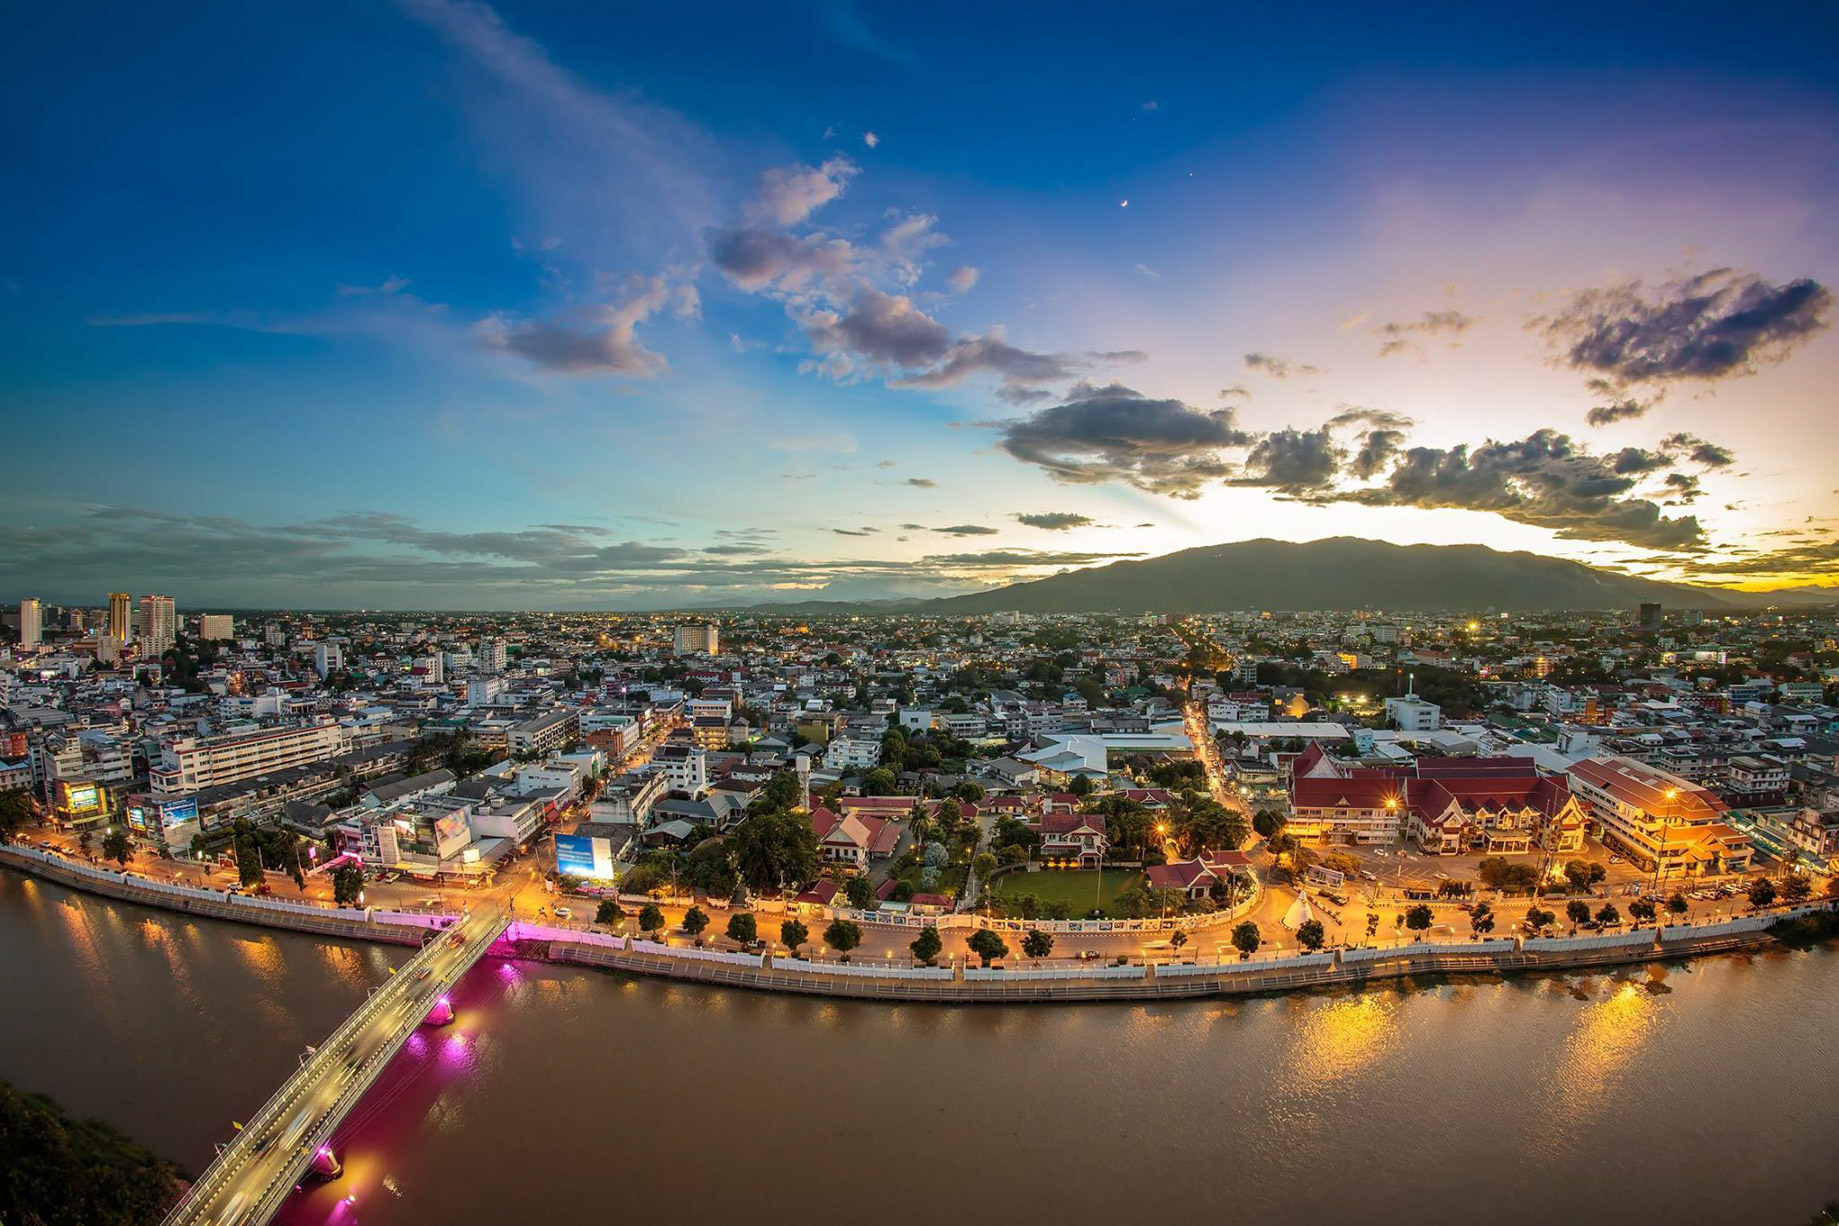 Anantara Chiang Mai Resort – Thailand – City View Aerial